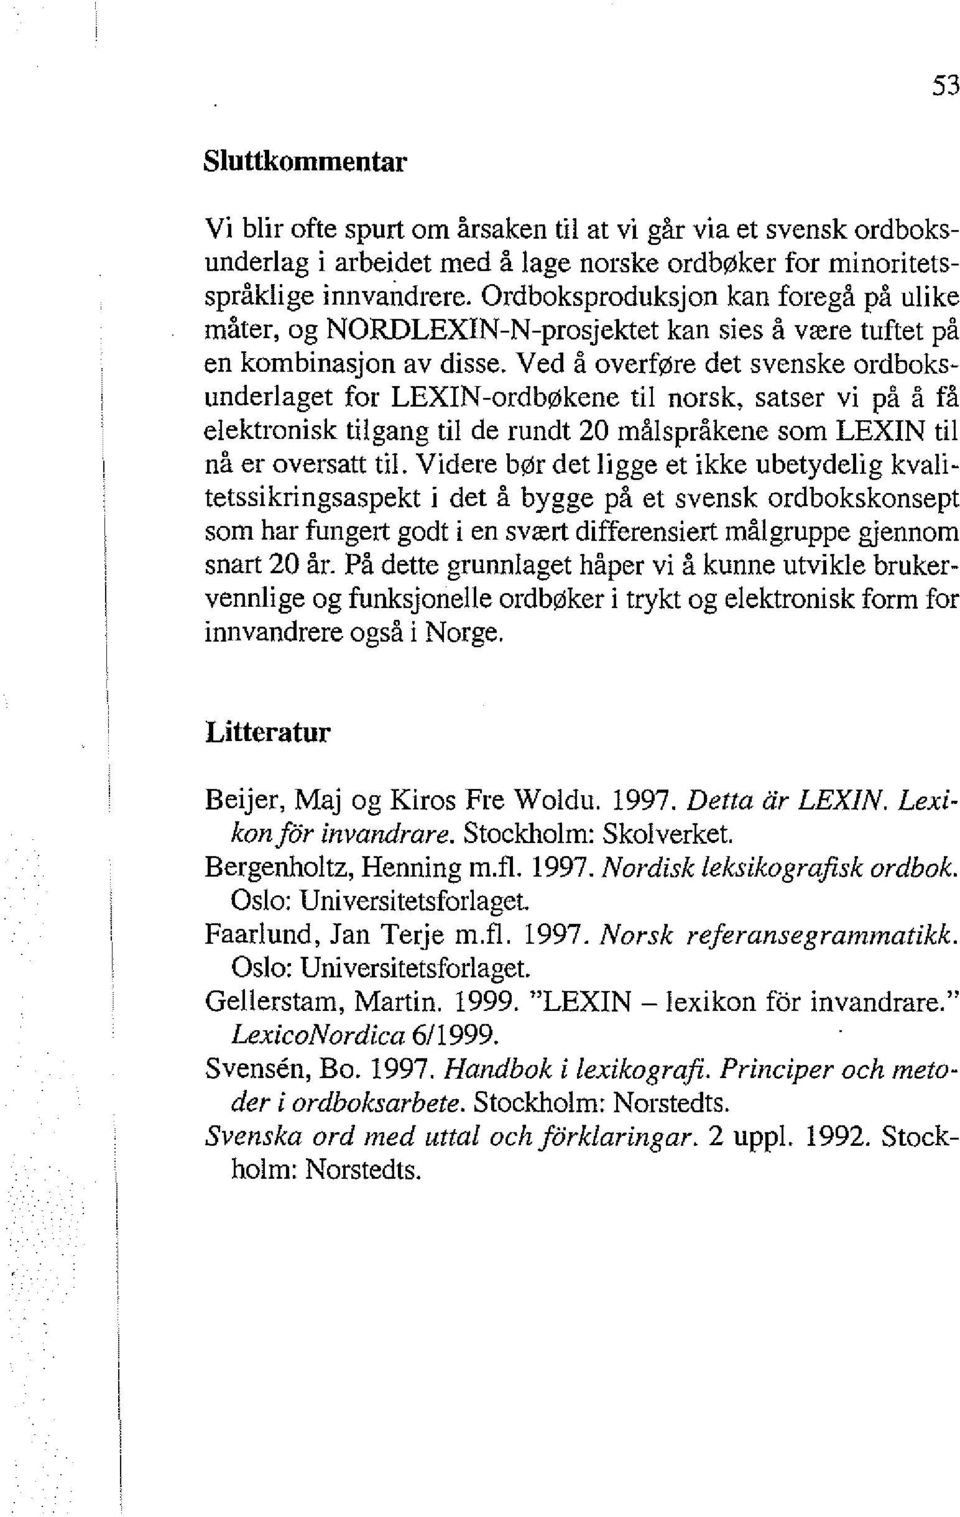 Ved å overføre det svenske ordboksunderlaget for LEXIN-ordbøkene til norsk, satser vi på å få elektronisk tilgang til de rundt 20 målspråkene som LEXIN til nå er oversatt til.